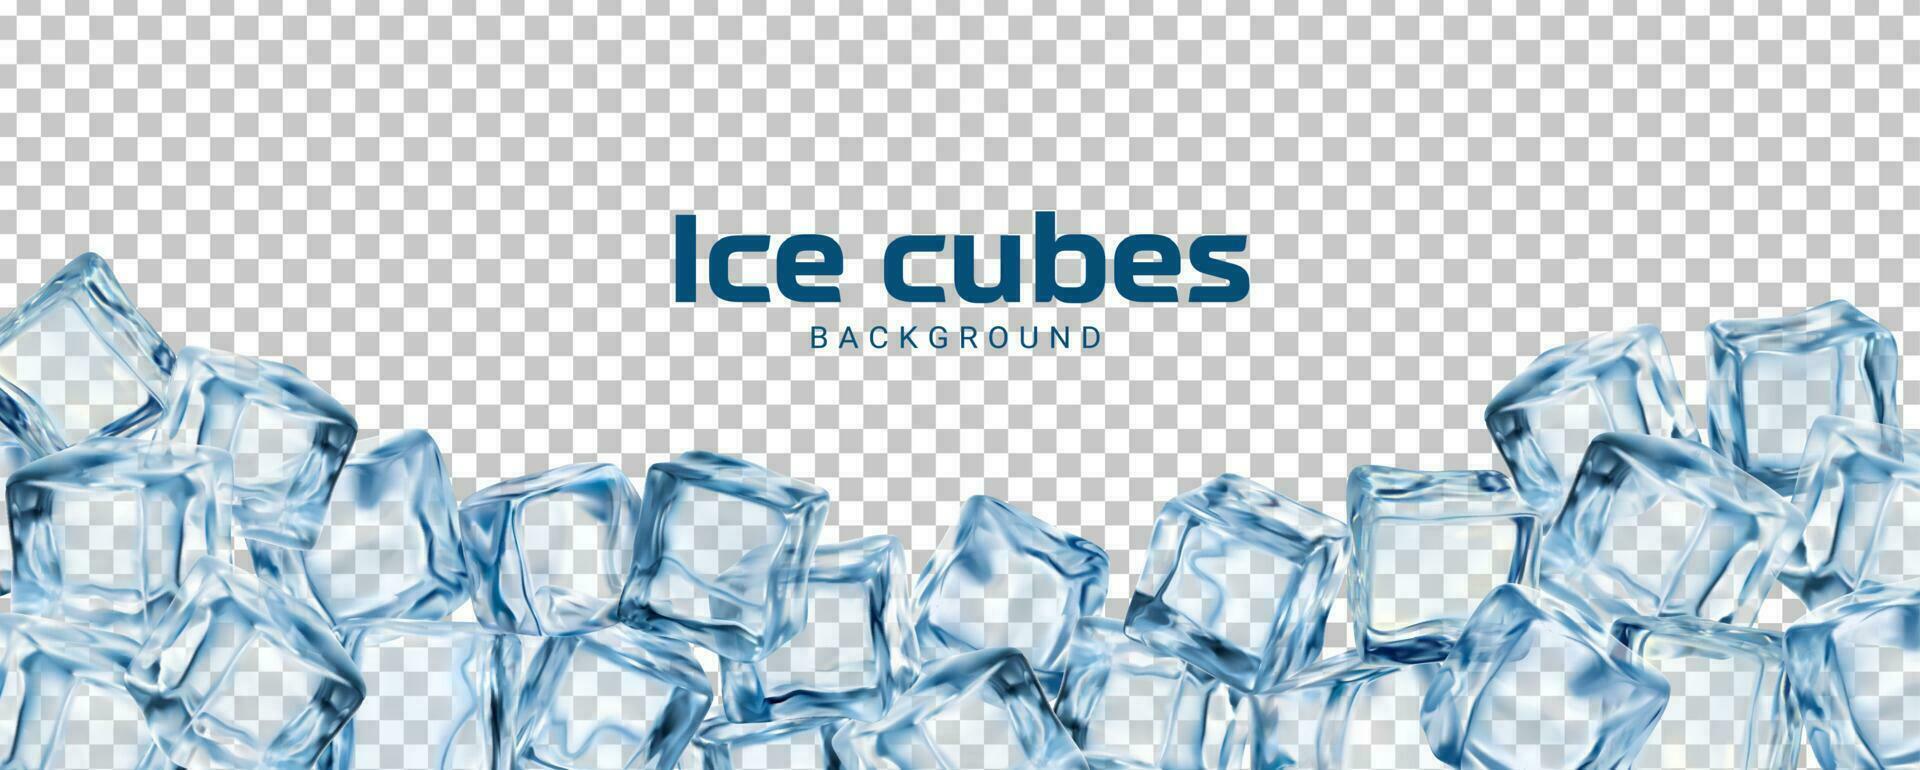 fundo realista de cubos de gelo, blocos de gelo de cristal vetor